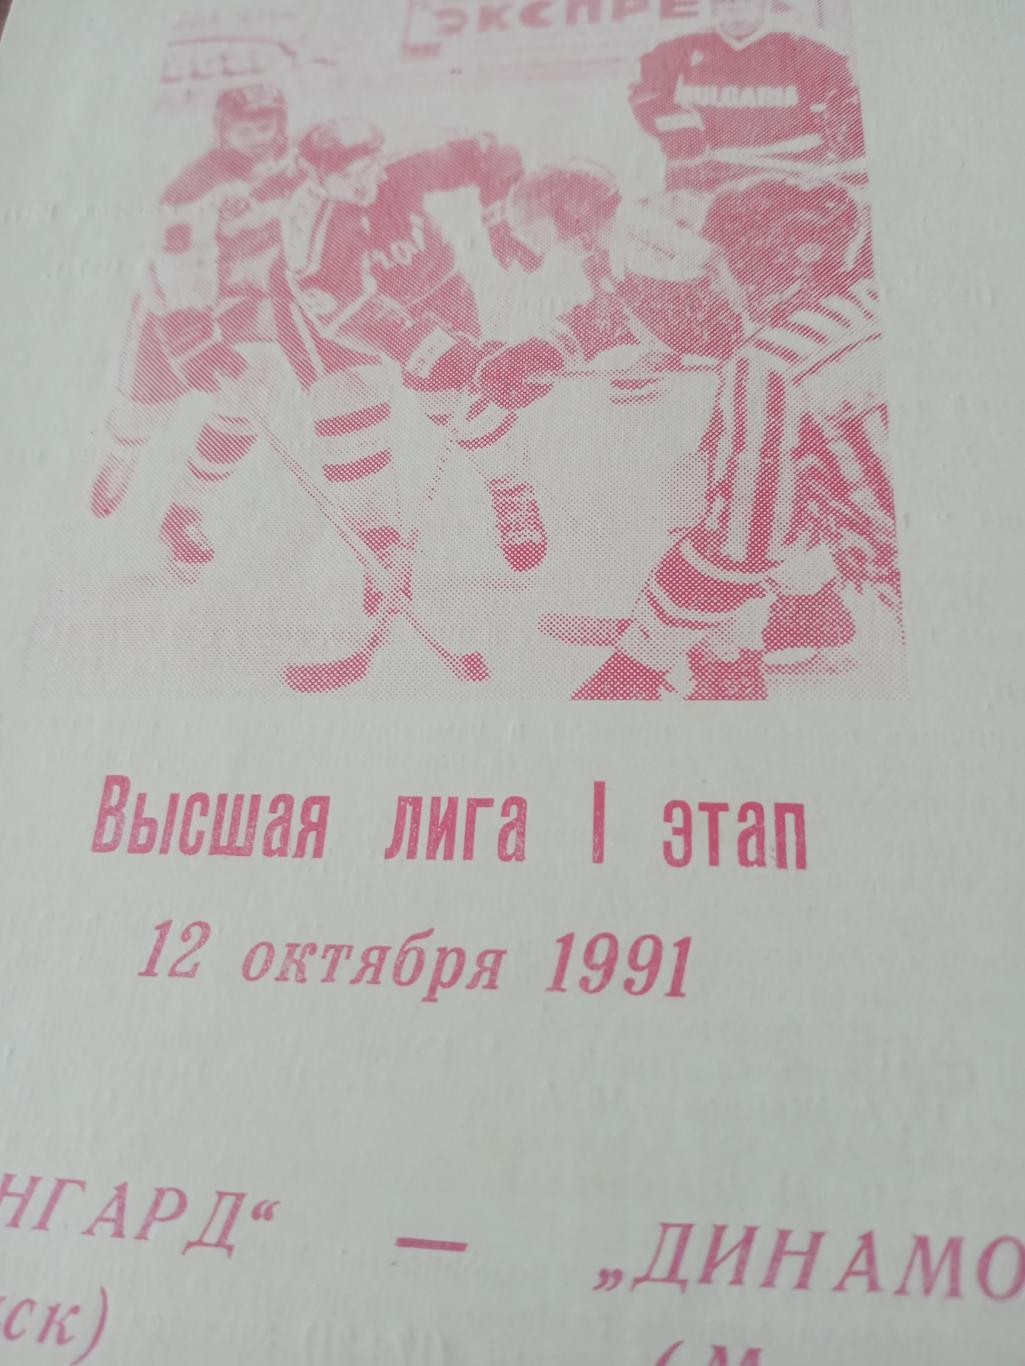 Авангард Омск - Динамо Москва. 12 октября 1991 год